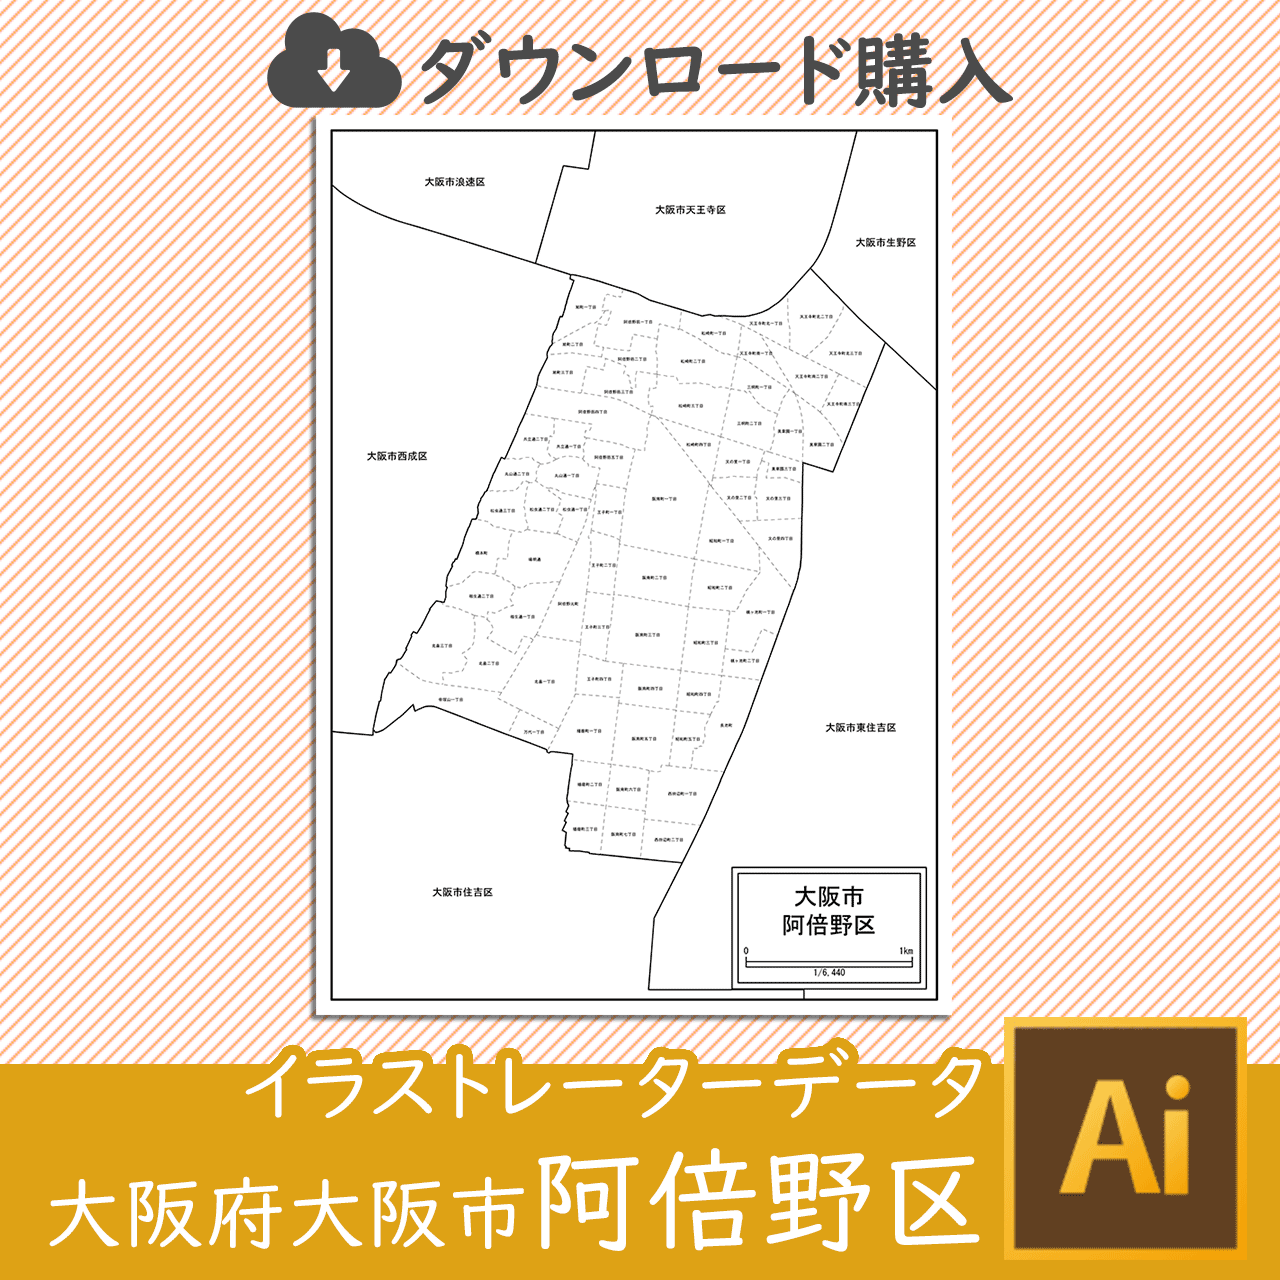 大阪市阿倍野区のaiデータのサムネイル画像